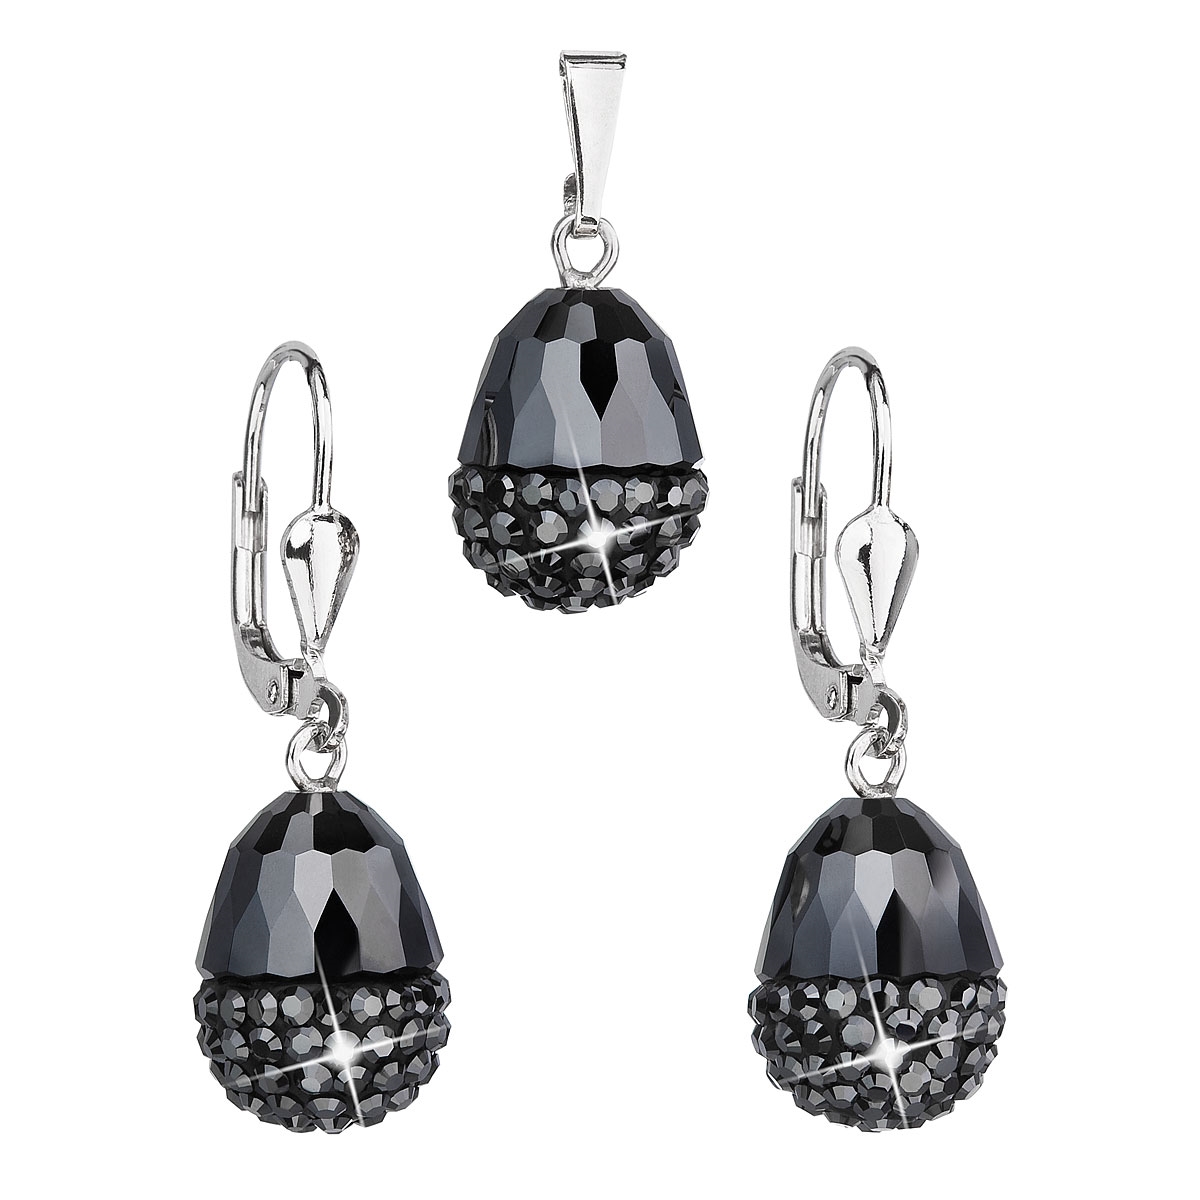 Sada strieborných šperkov s kameňmi Crystals from Swarovski ® hematitu